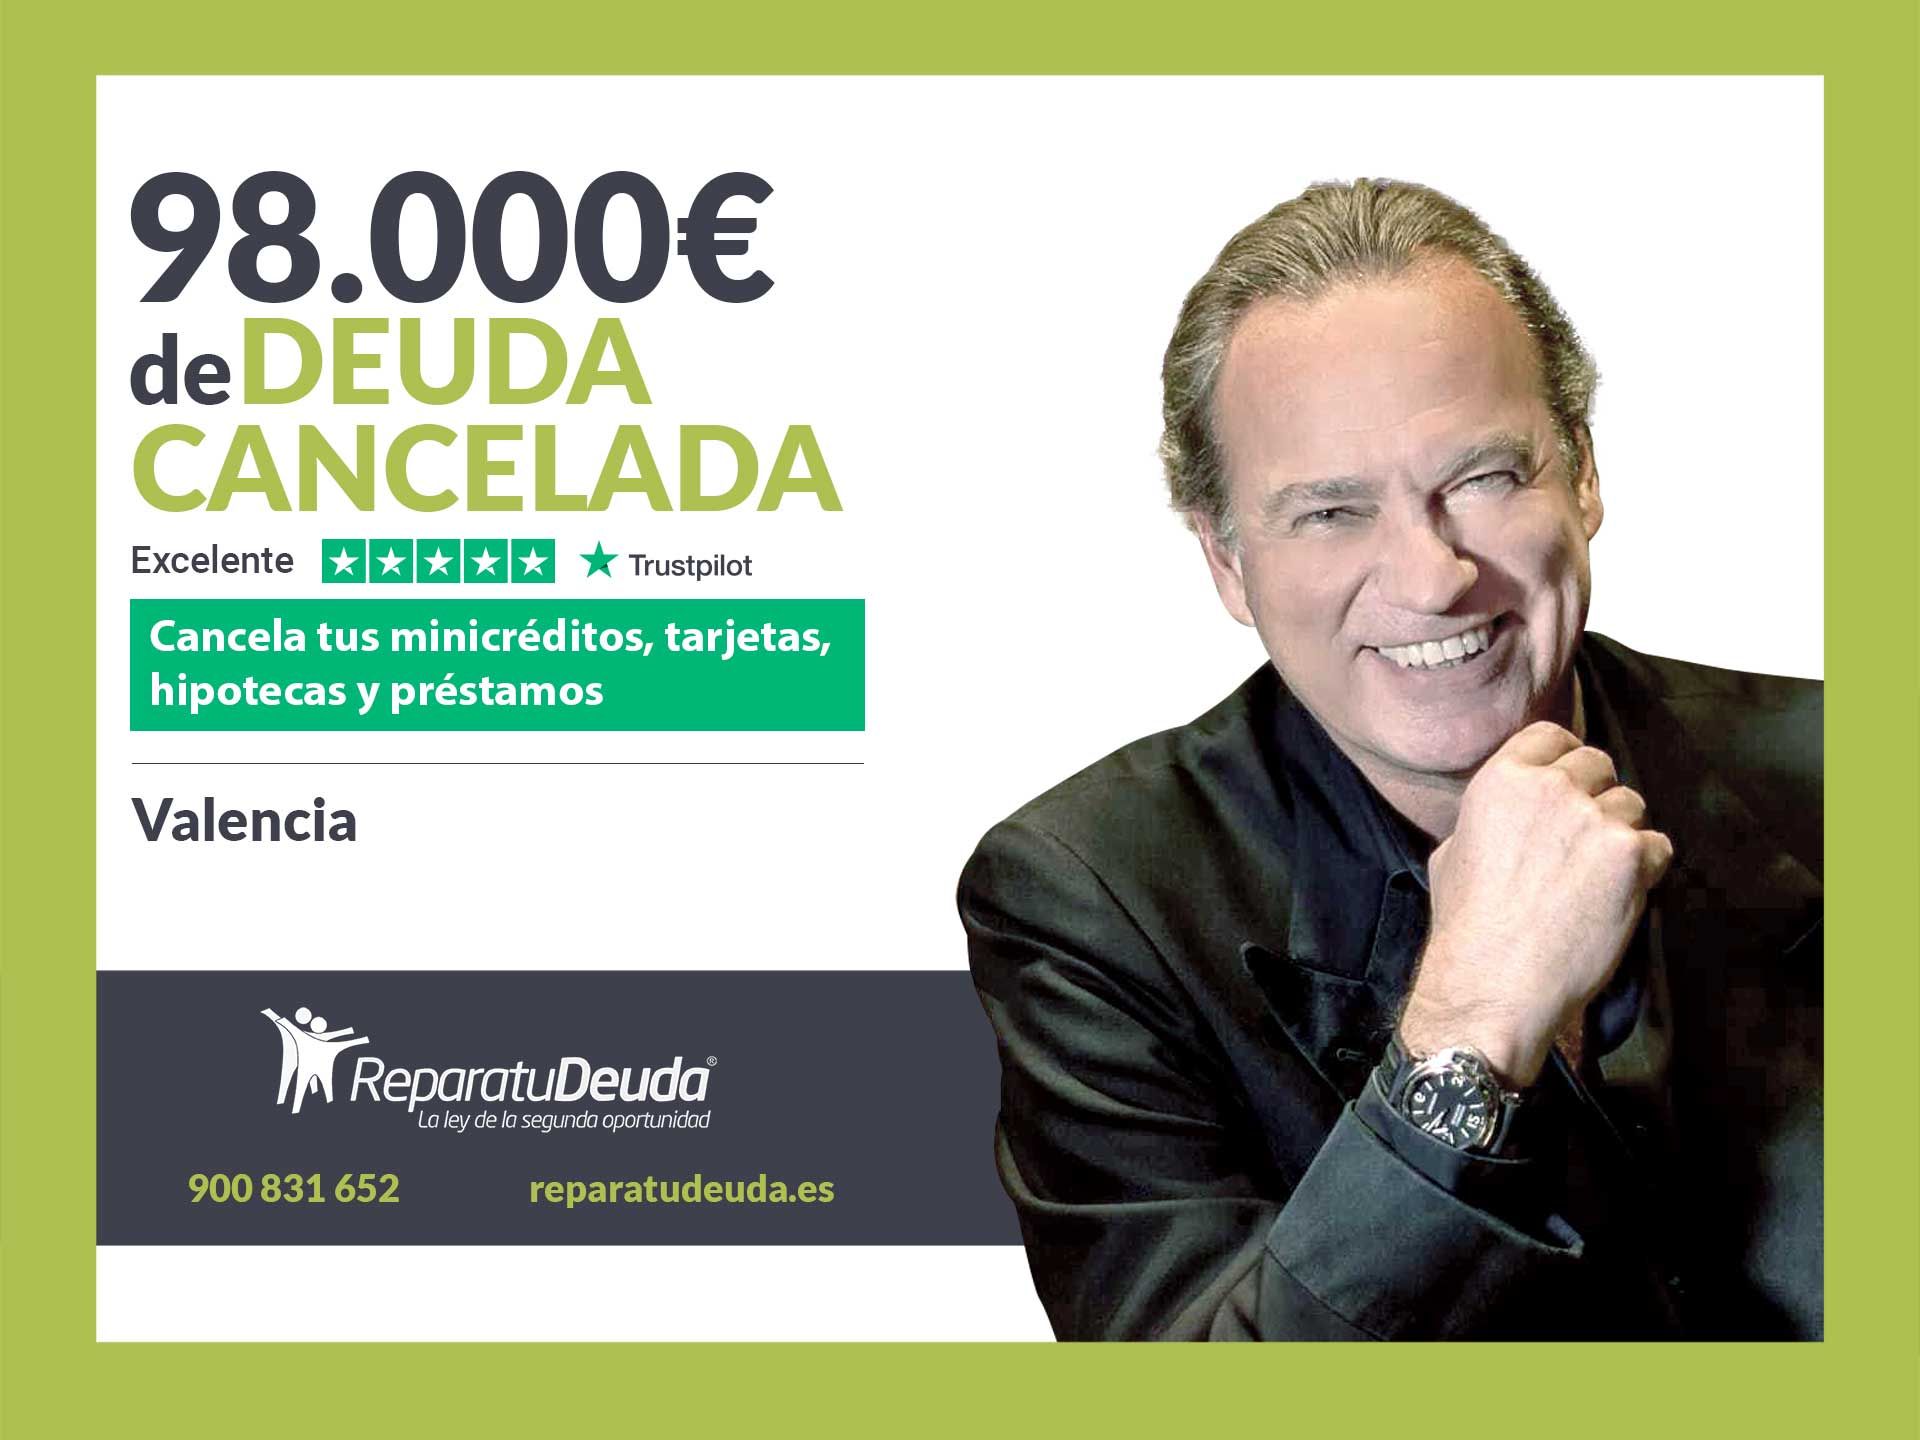 Repara tu Deuda Abogados cancela 98.000? en Valencia con la Ley de Segunda Oportunidad